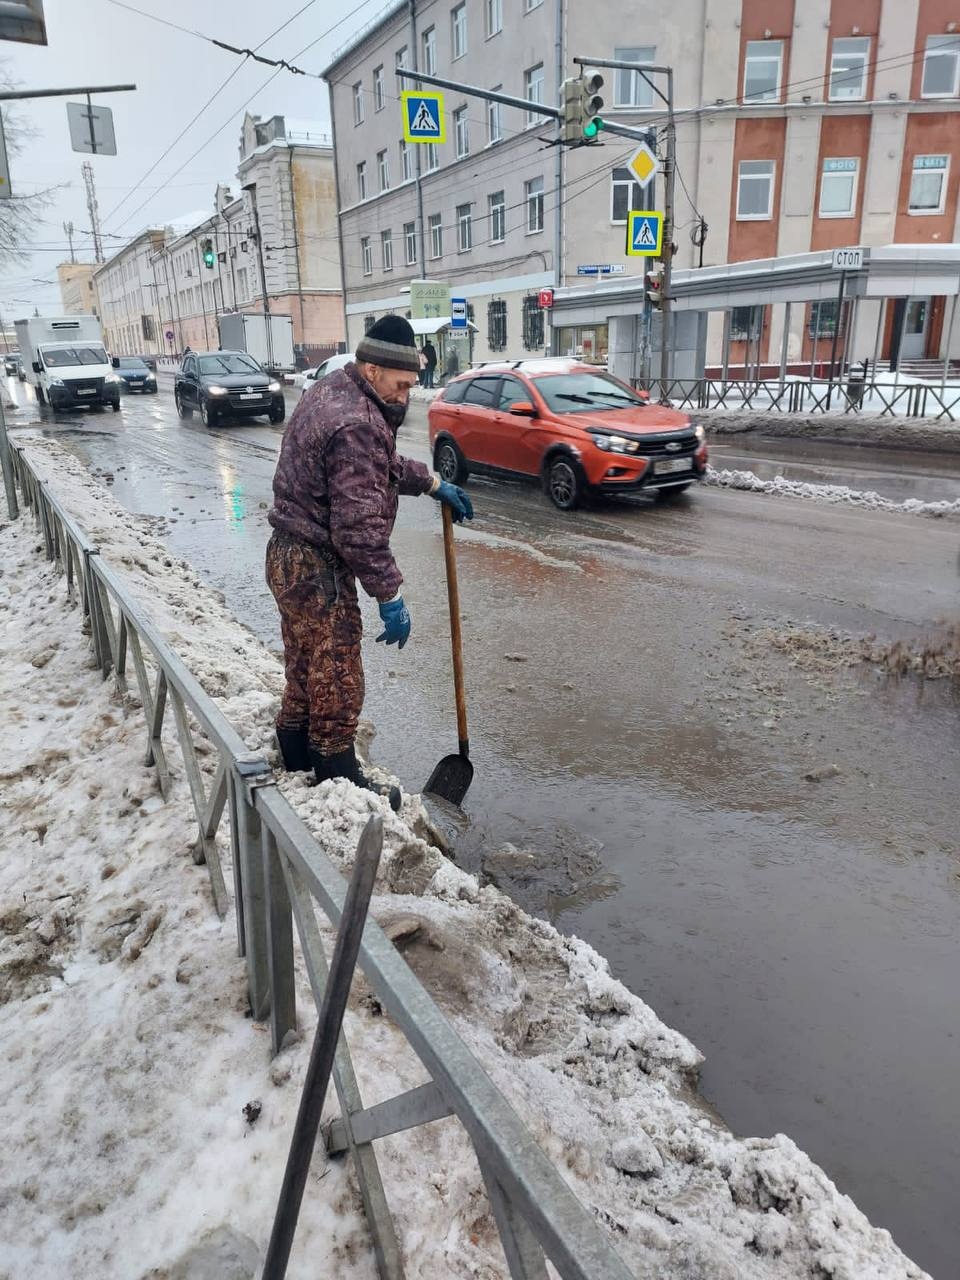 Мэр Ярославля предложил откачивать воду с помощью техники и изменить график выхода дворников